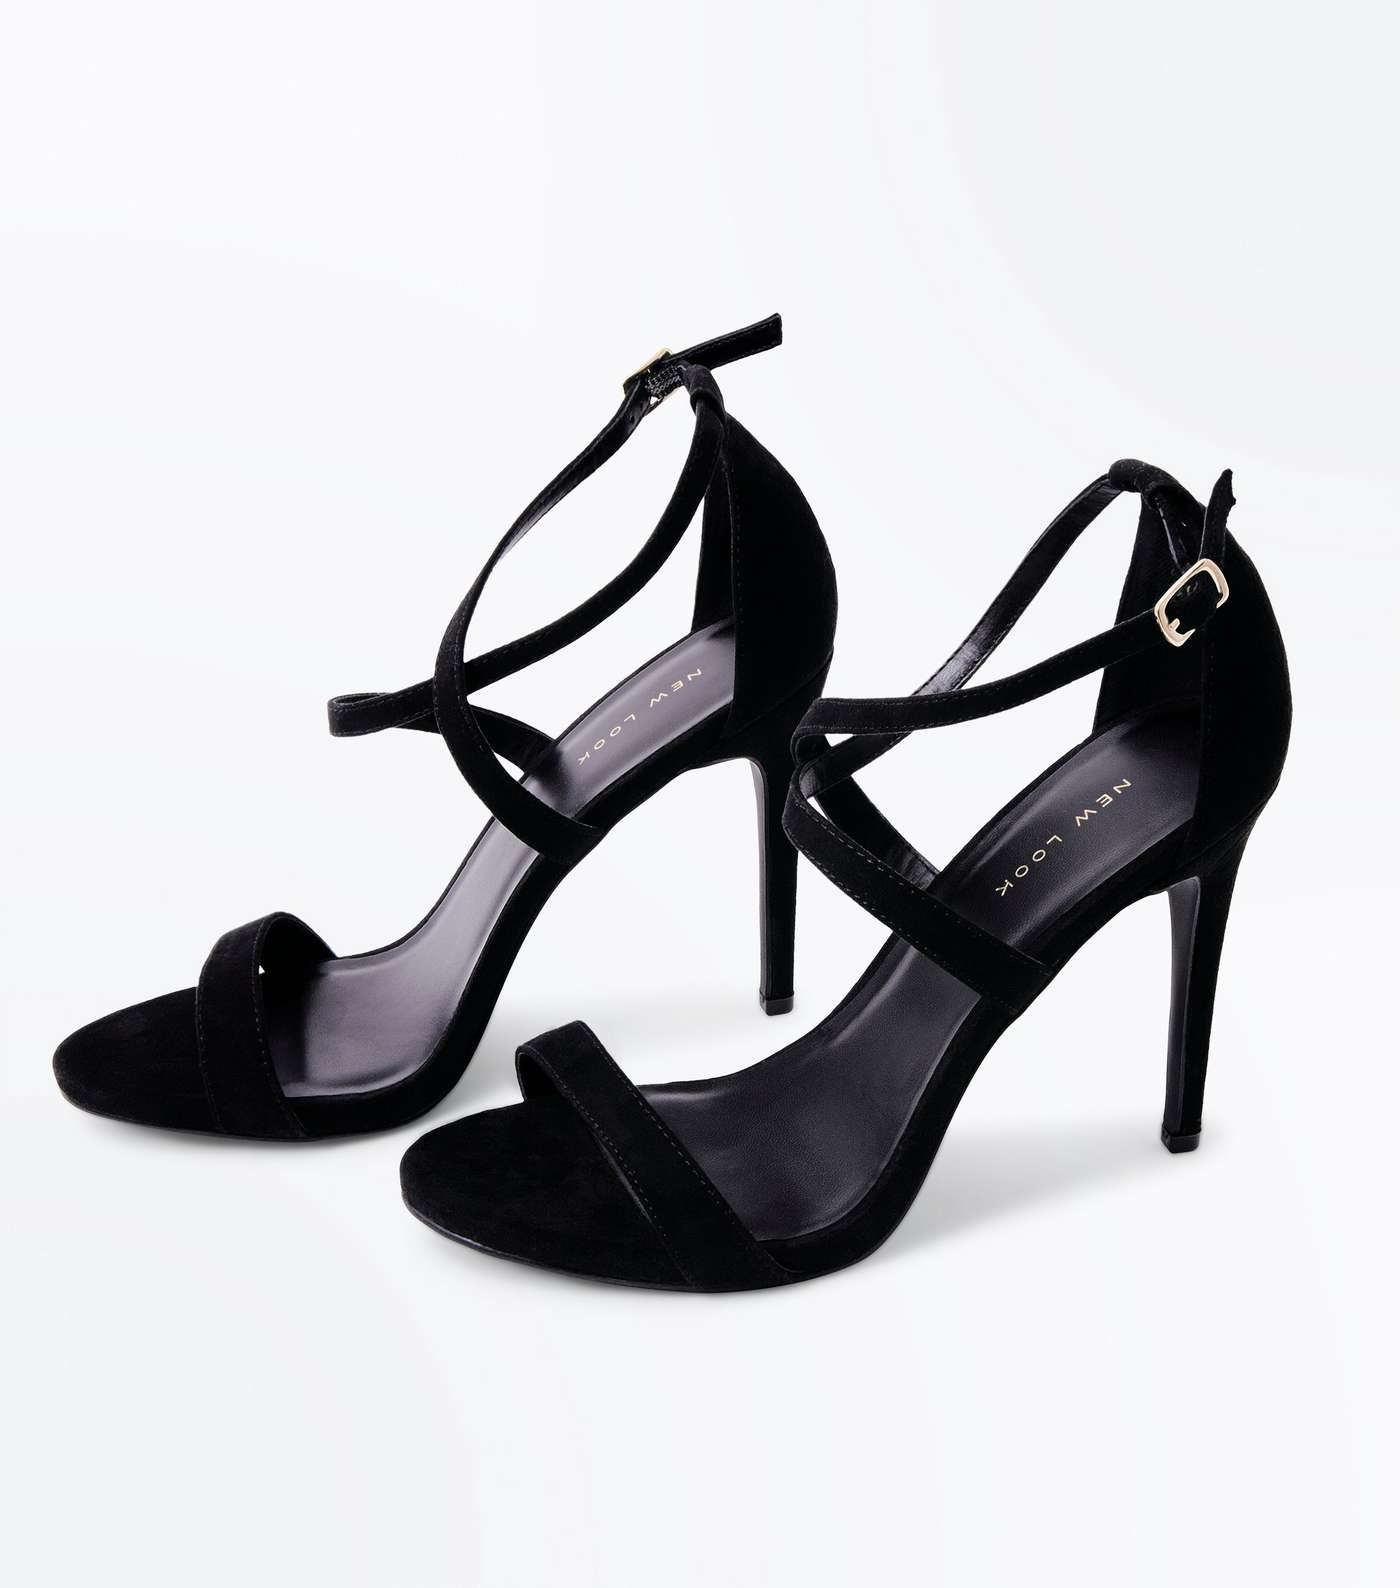 Black Suedette Strappy Stiletto Heel Sandals Image 4